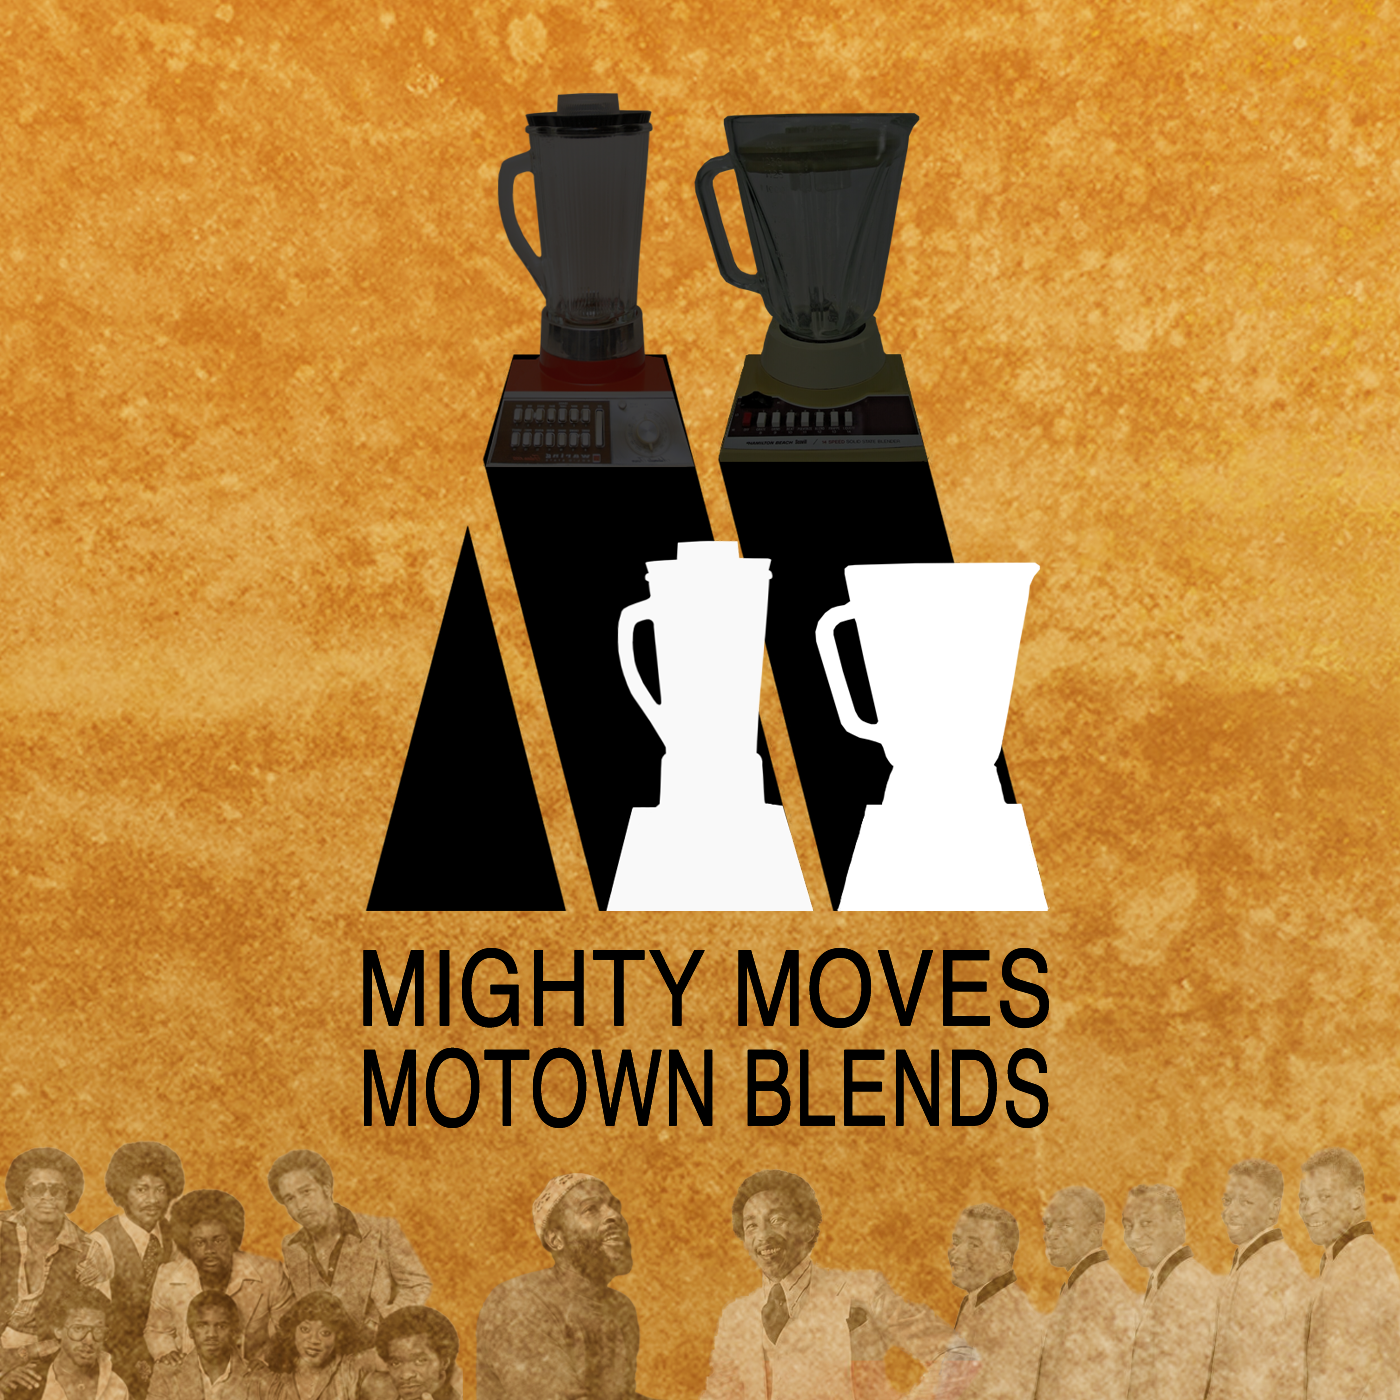 Motown Blends